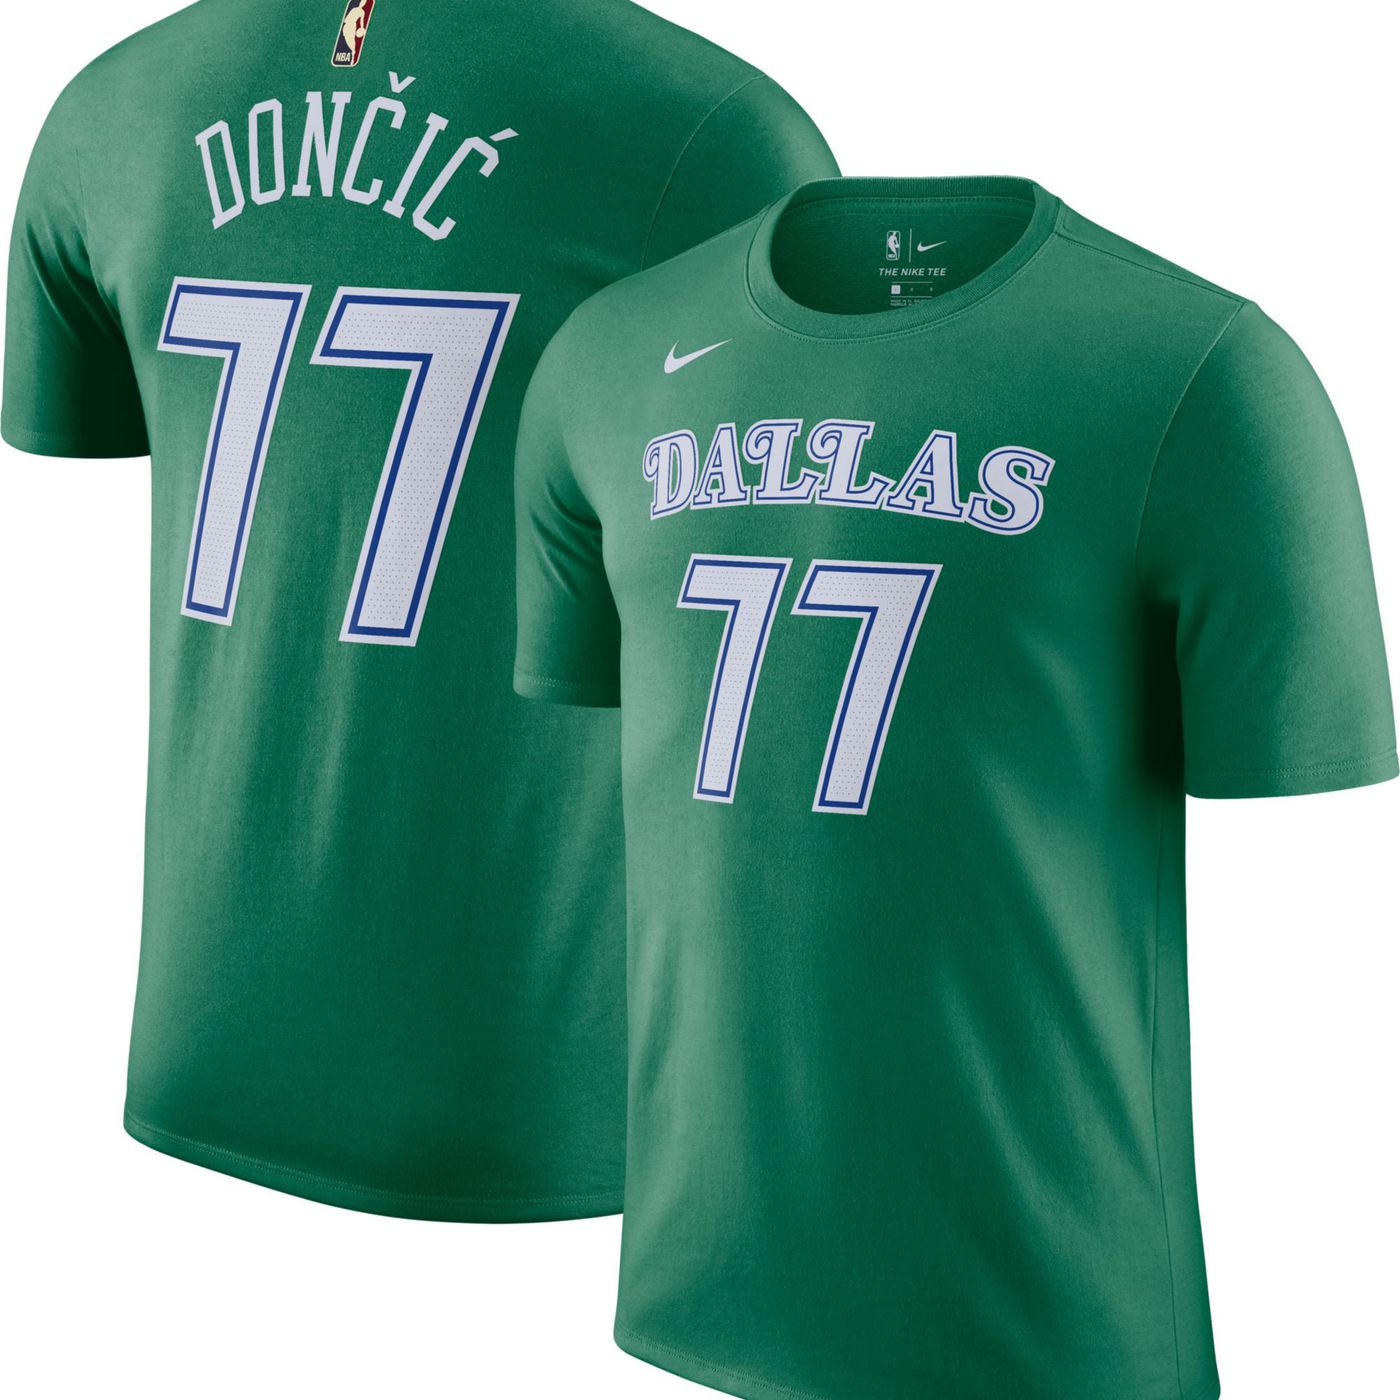 Dallas Mavericks green Hardwood Classics t-shirt jerseys are now available  - Mavs Moneyball